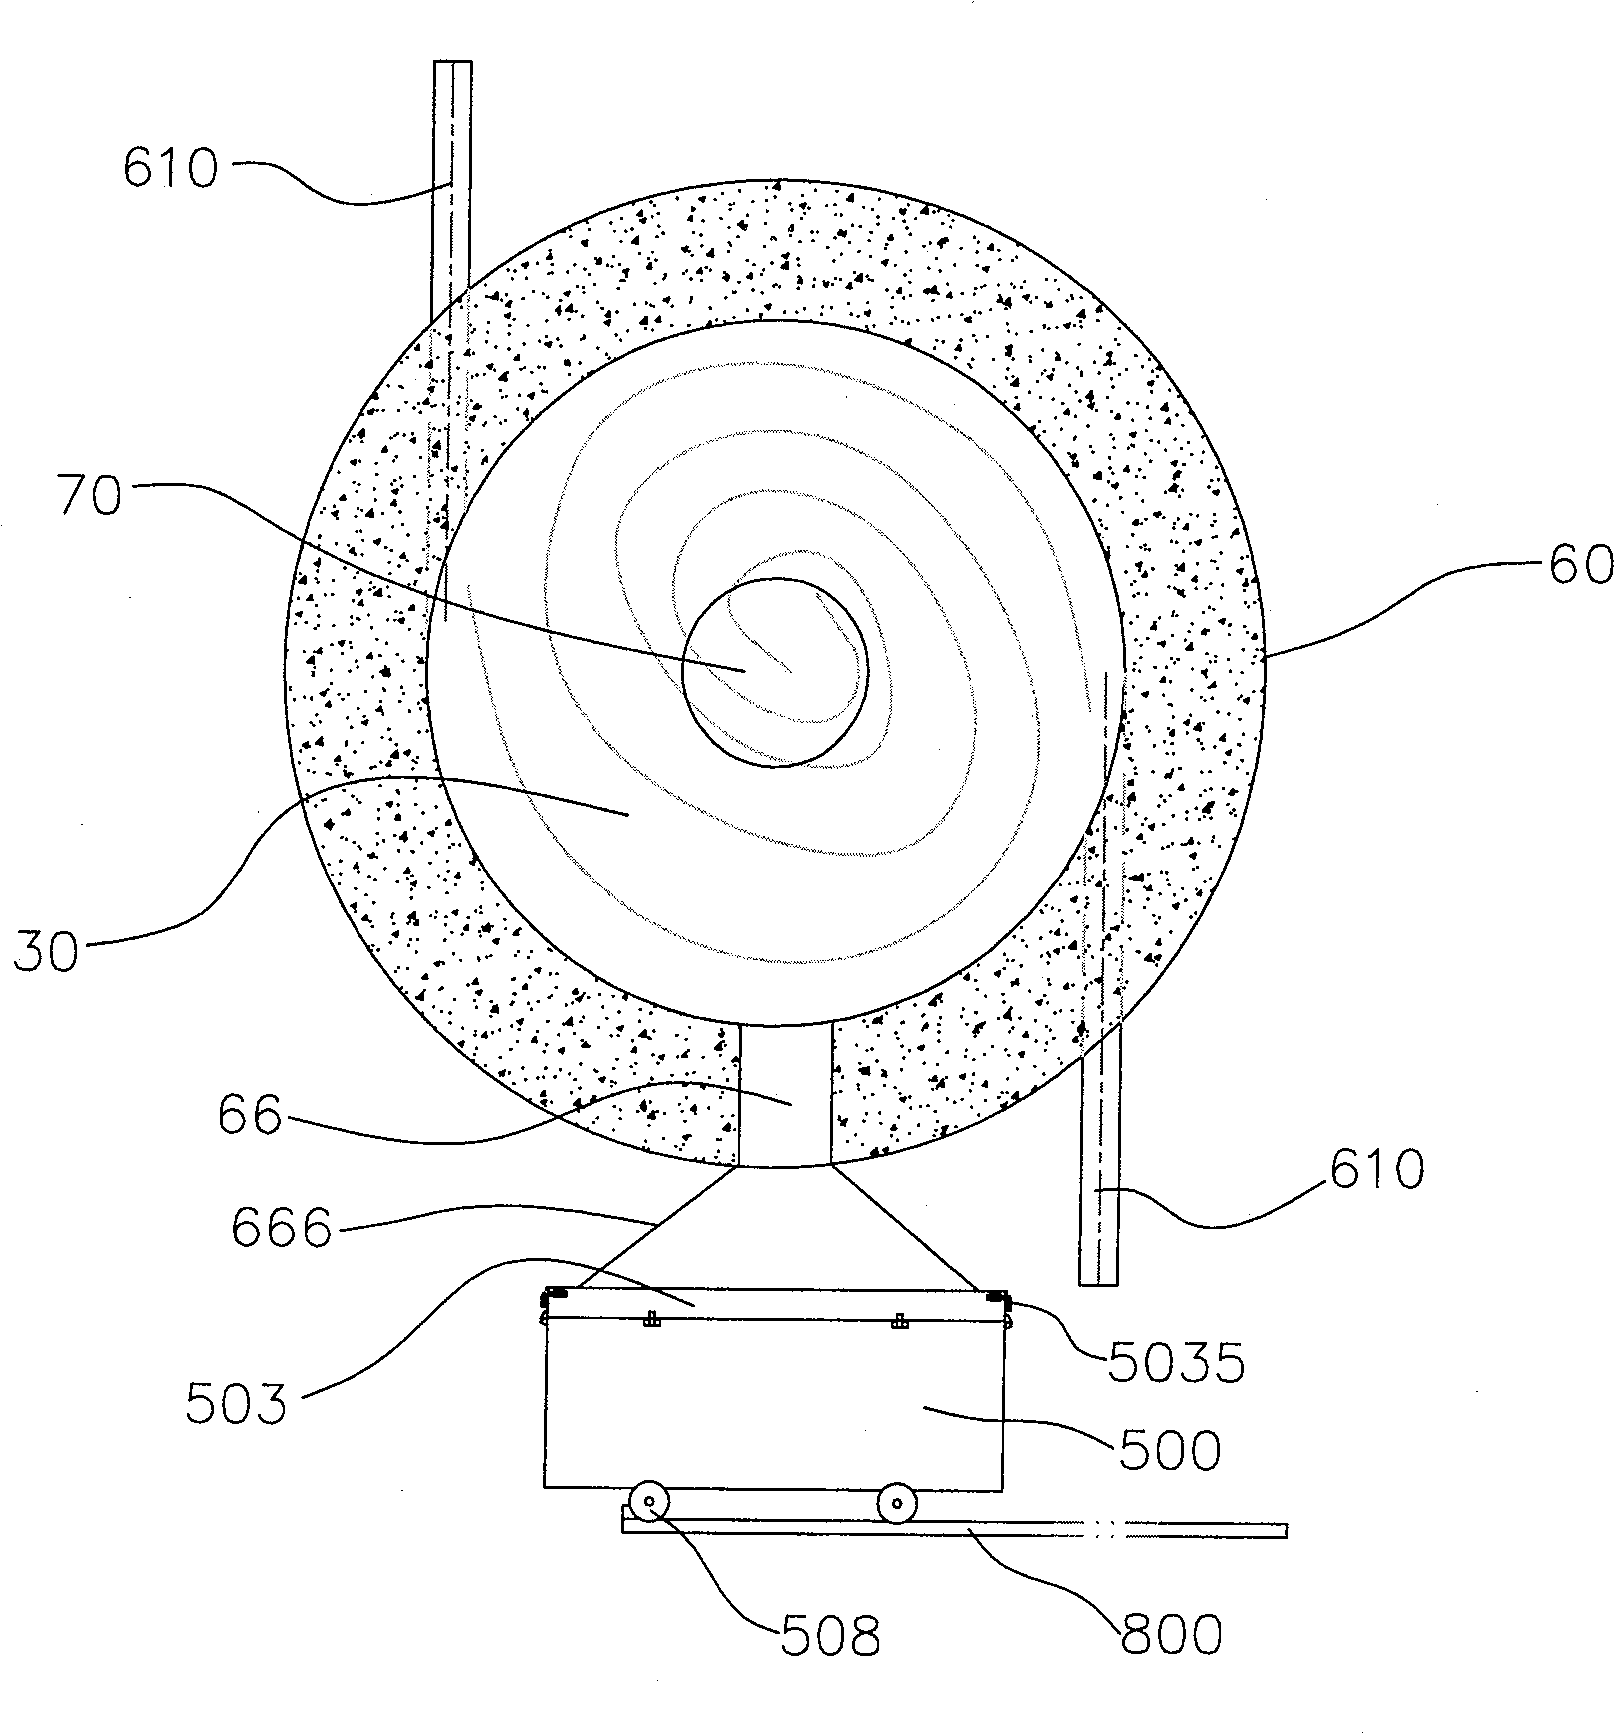 Liquid-type slag releasing device of emulsifying coke mortor